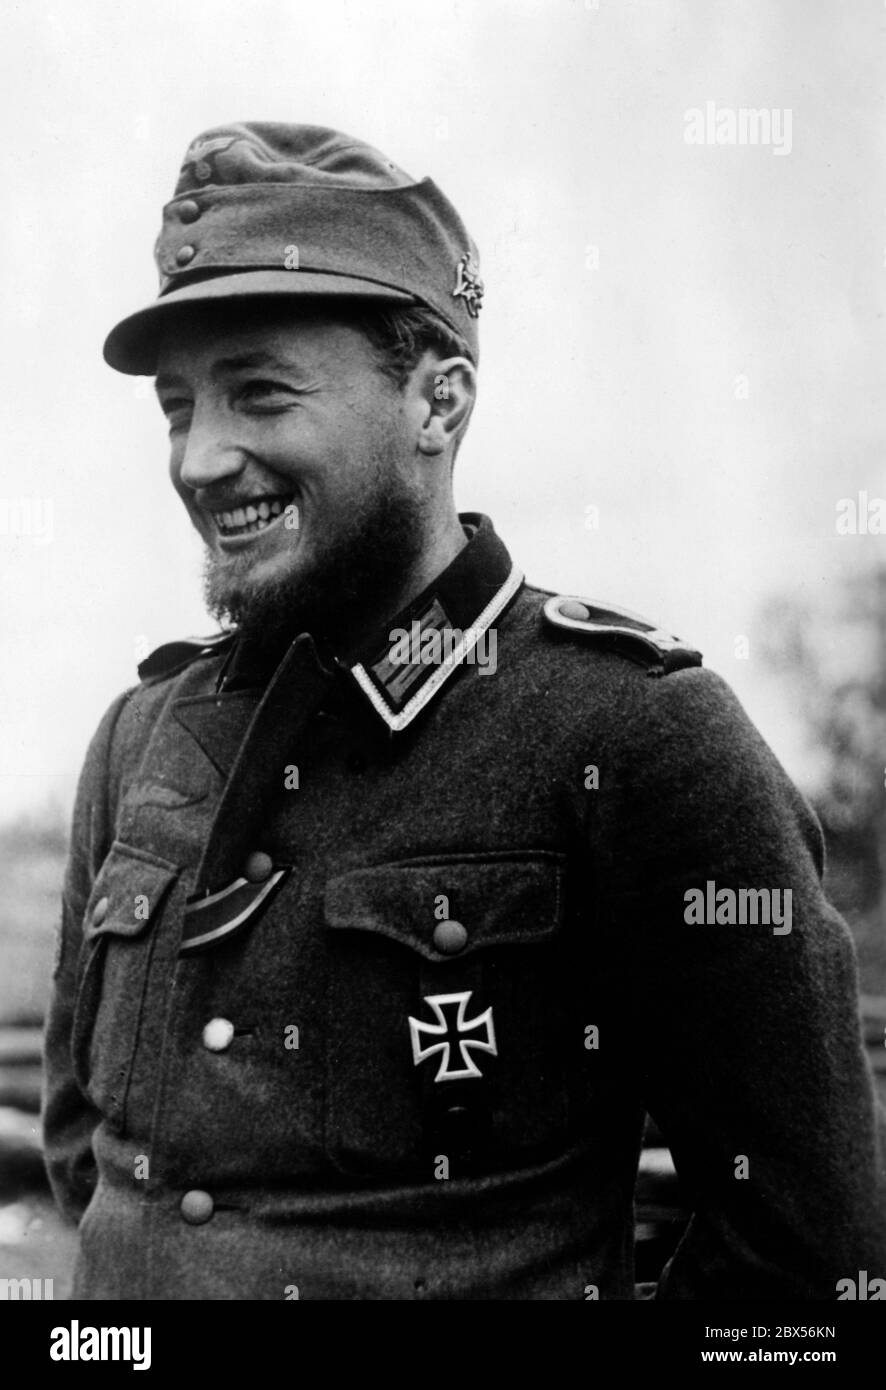 Un soldat de montagne allemand est récompensé de la 1ère classe de la Croix de fer. Pendant la bataille d'encerclement de Kholm, le 'Kampfgruppe Scherer' a défendu avec succès la ville pendant 105 jours. (Photo PK. Le correspondant de guerre elle). Banque D'Images